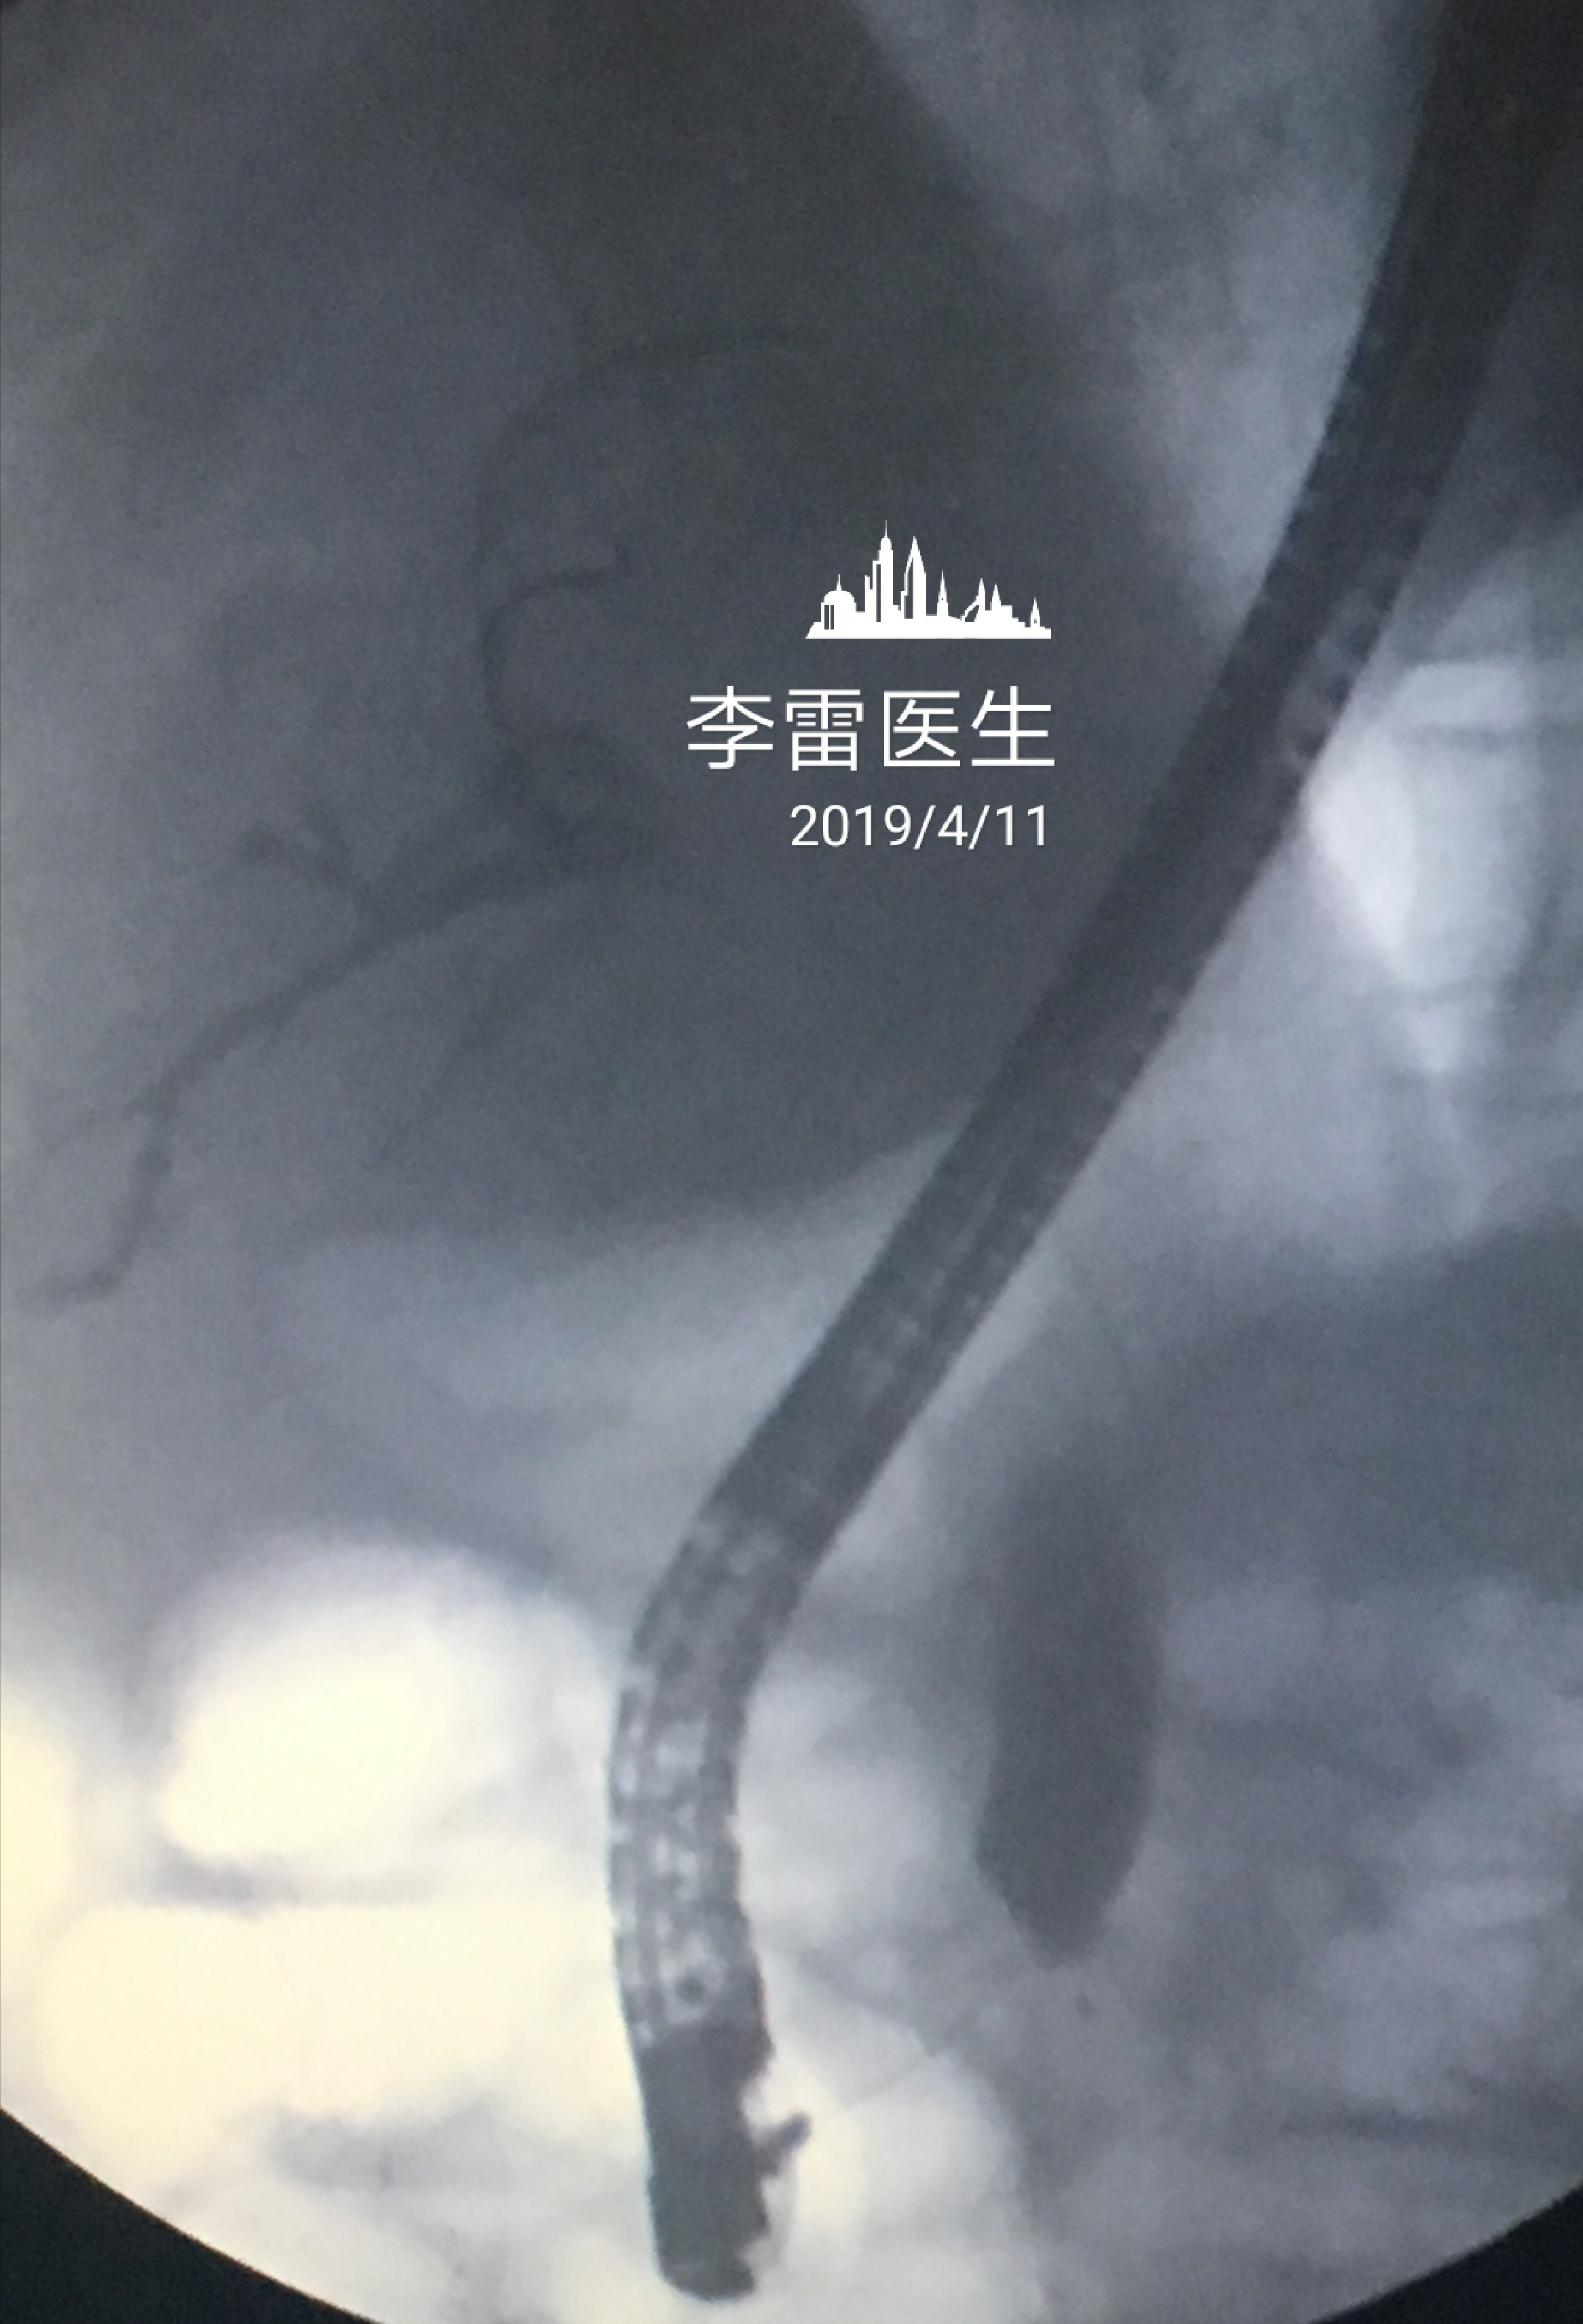 这是胆道金属支架的x线照片,显示胆道金属支架扩张良好.